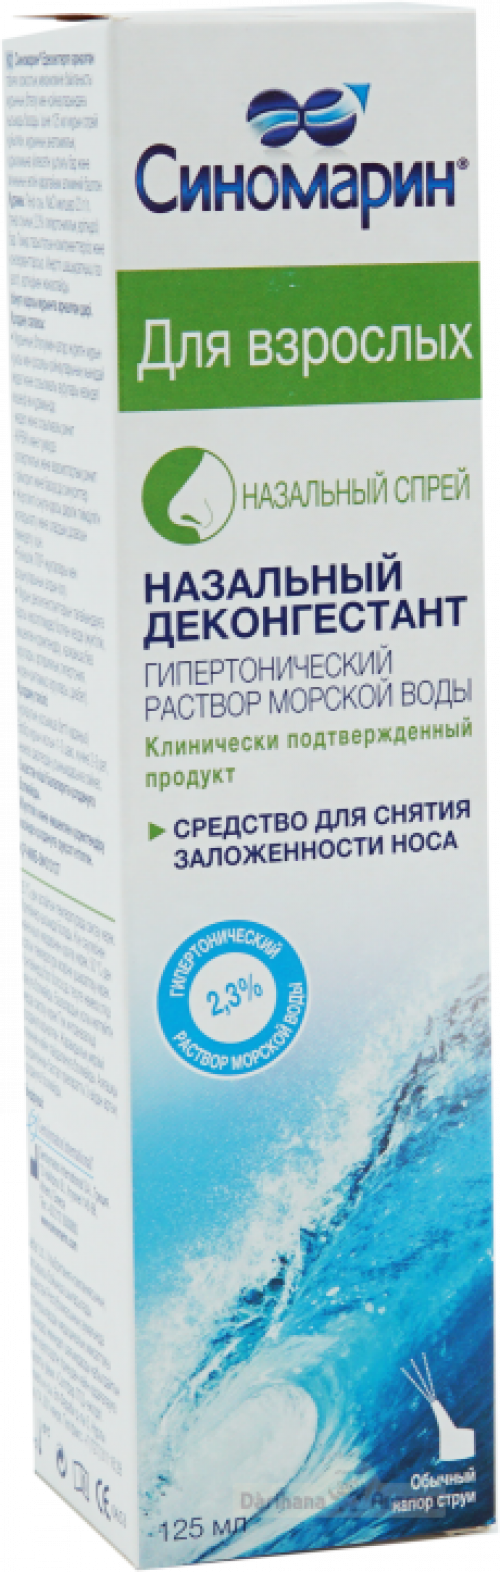 Синомарин для взрослых Спрей в Казахстане, интернет-аптека Рокет Фарм